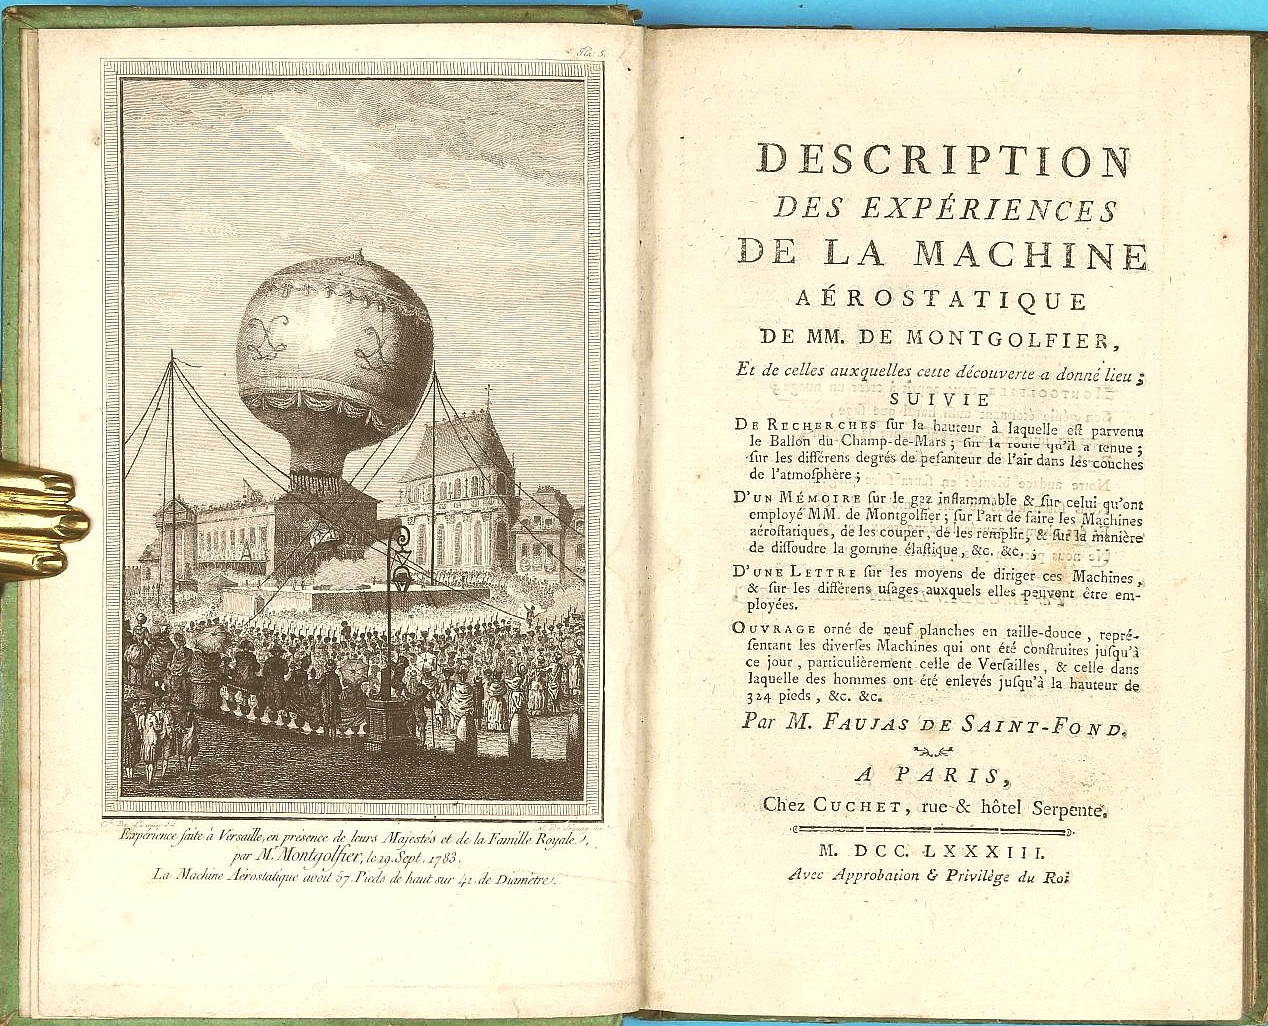 Title page and frontispiece of Description des experiences de la machine aerostatique de MM. Montgolfier